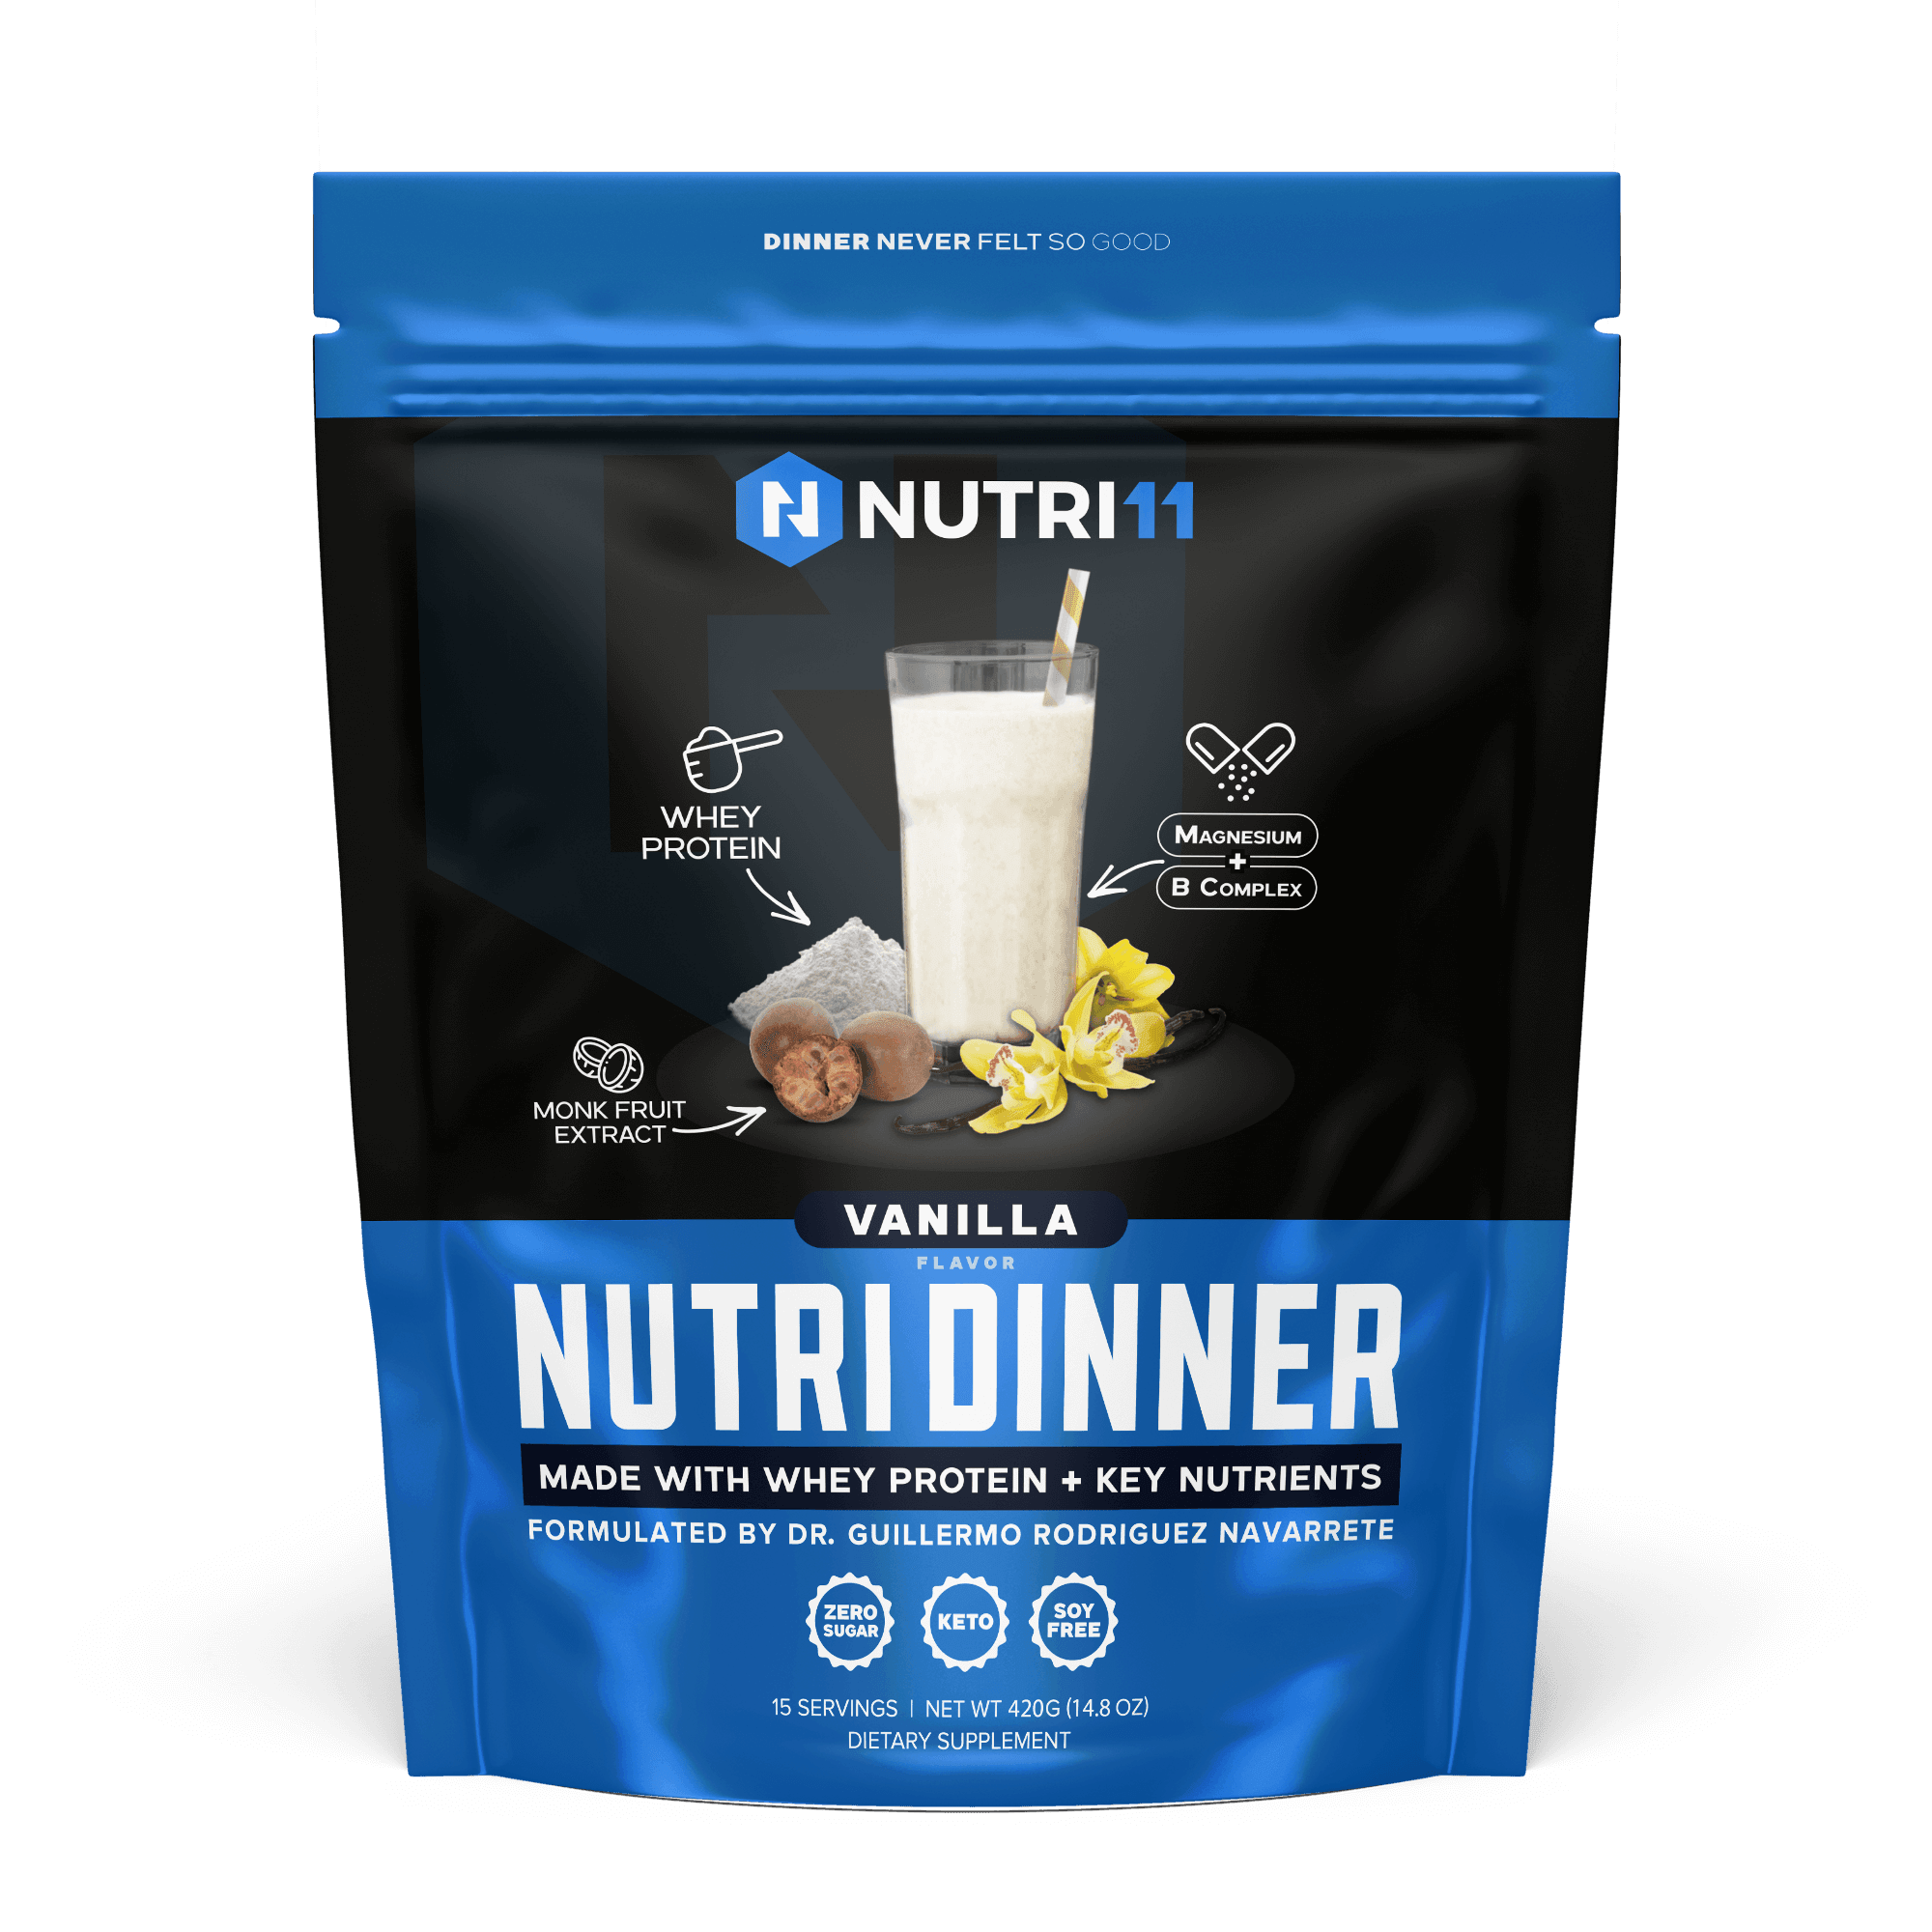 NutriDinner - Nutri11